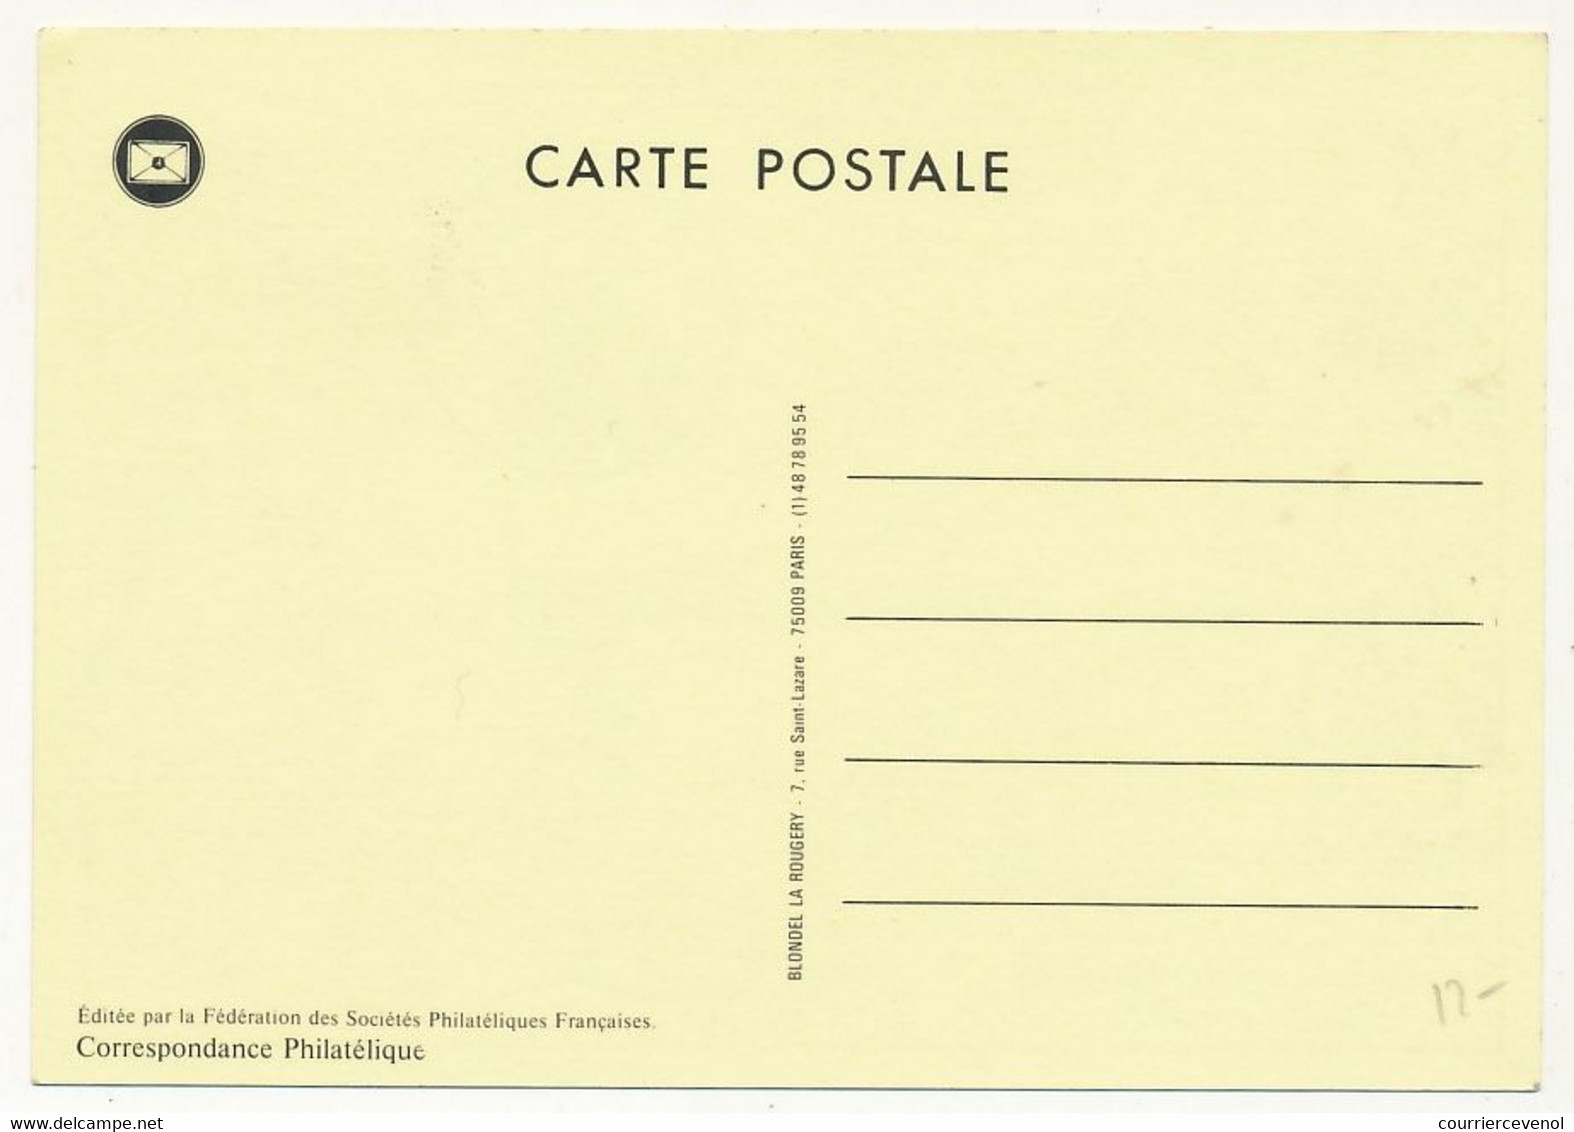 FRANCE - Carte Locale - Journée Du Timbre 1989 - Diligence Paris Lyon - 13 LA CIOTAT - 15/4/1989 - 1980-1989